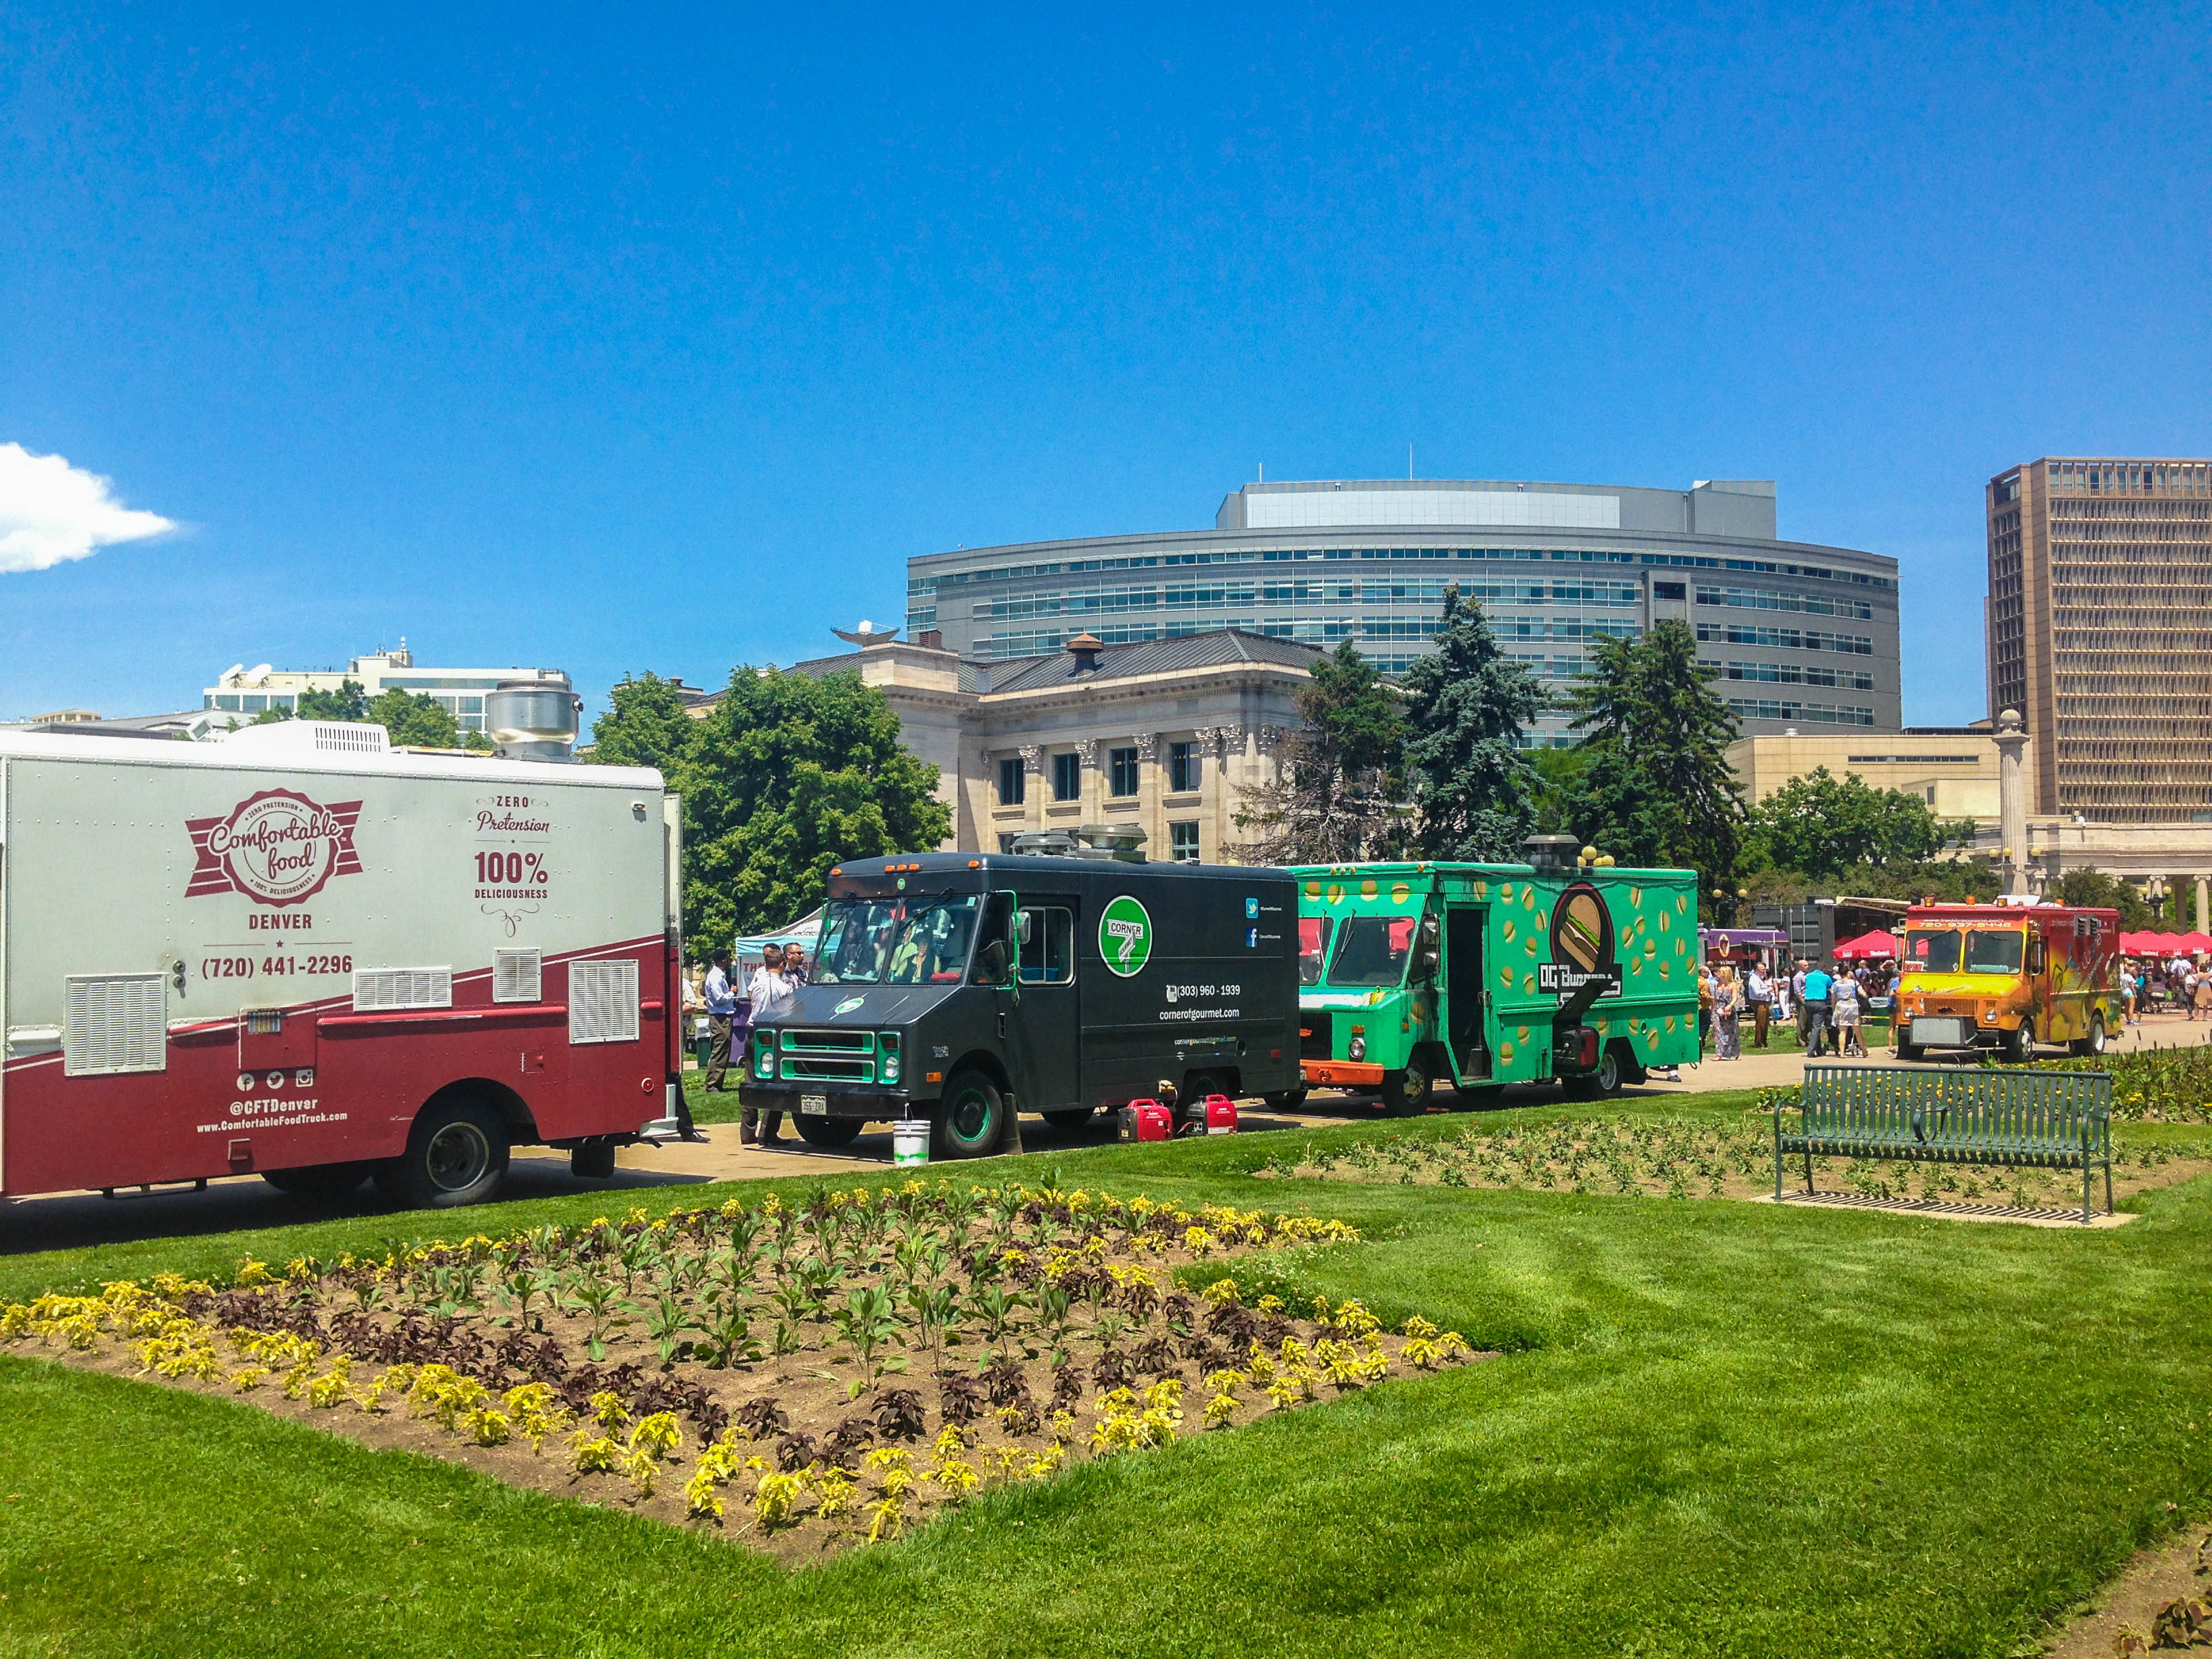 Numerous food trucks downtown Denver